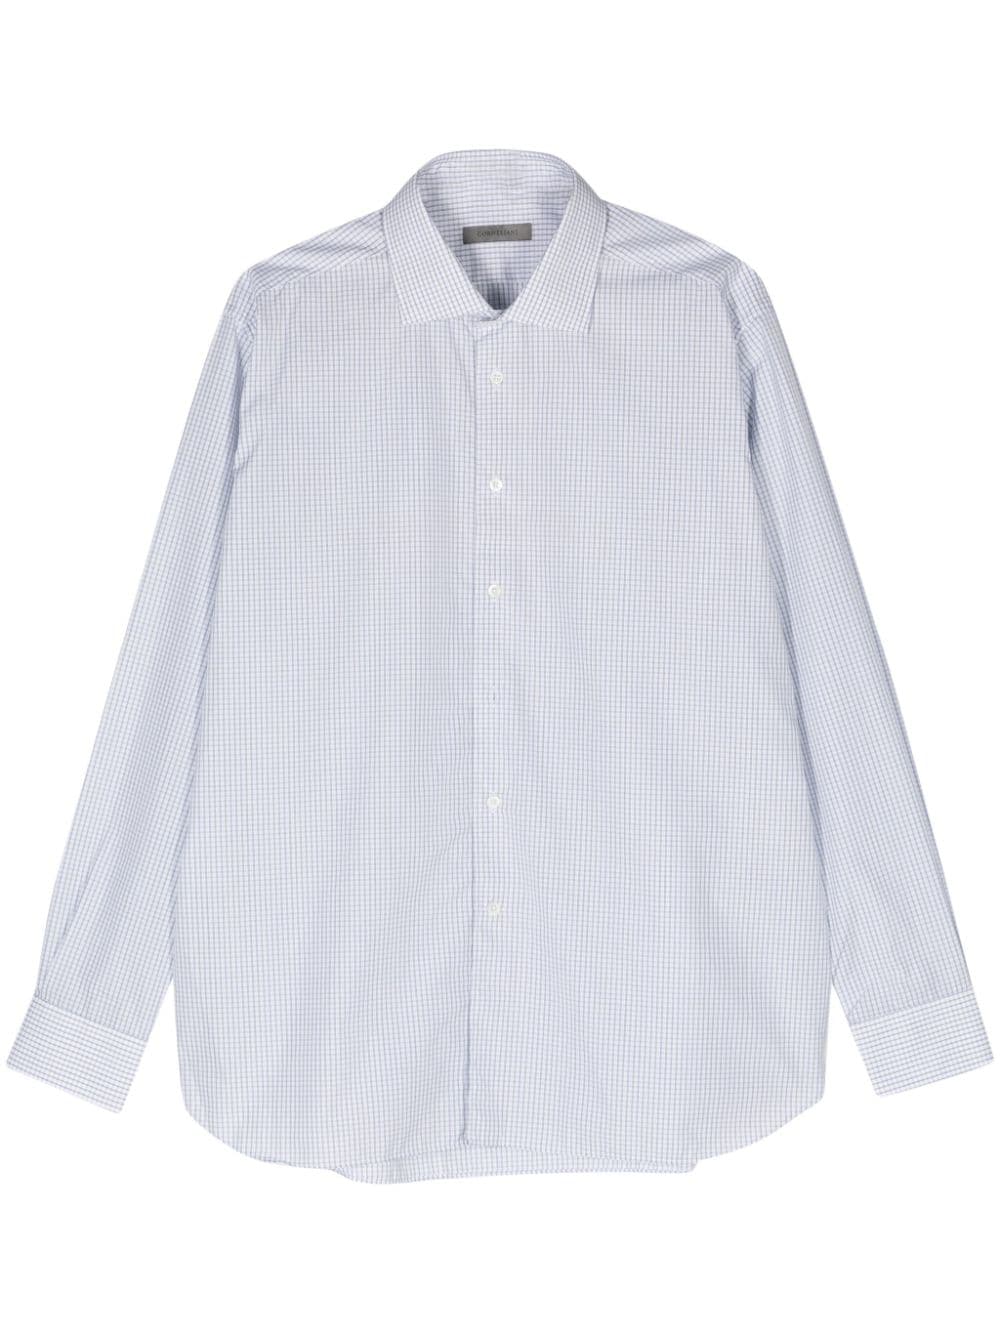 Corneliani checked cotton shirt - Bianco